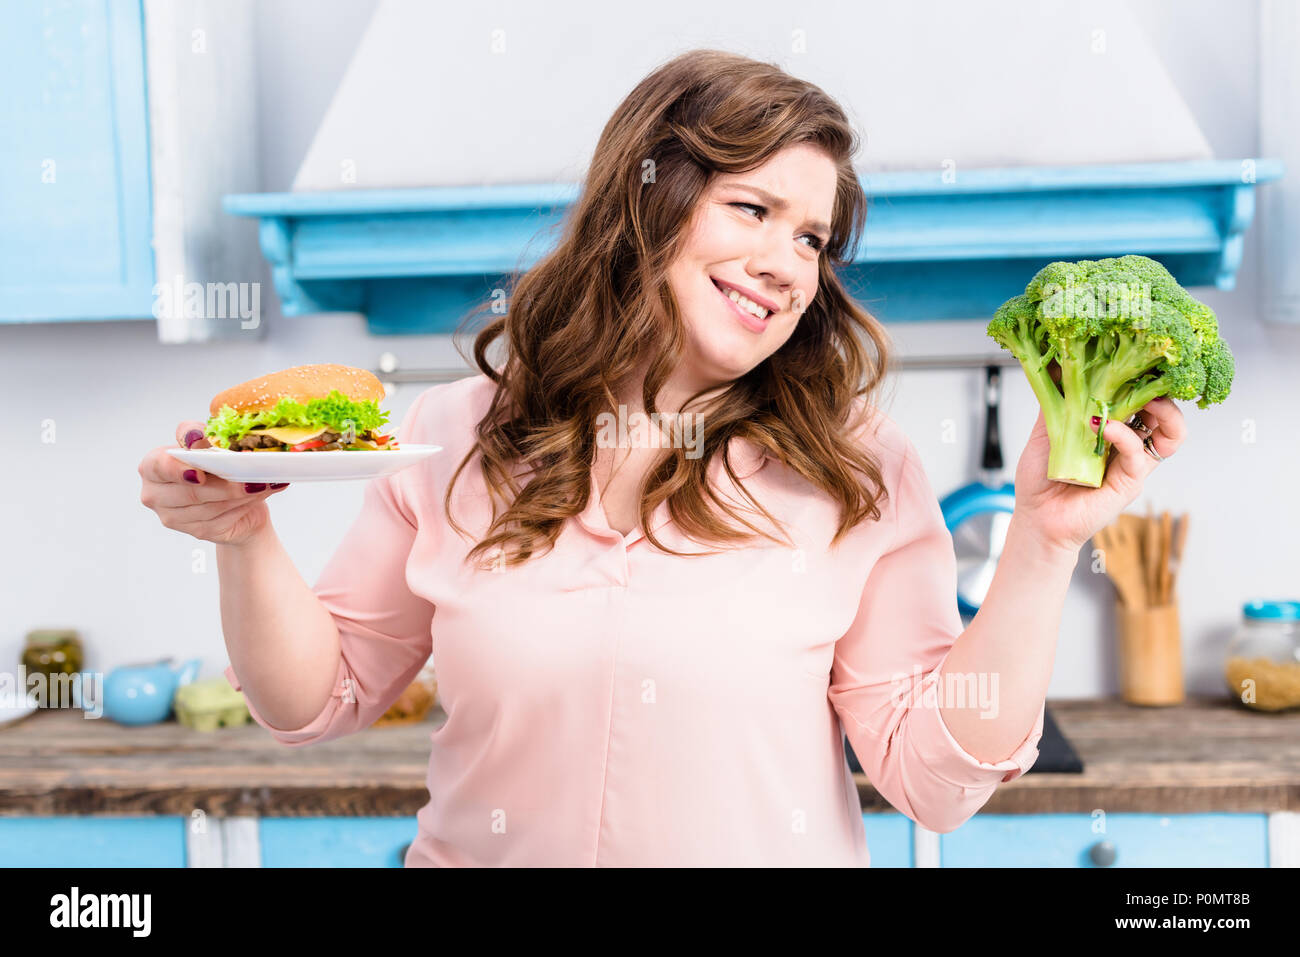 Ritratto di donna sovrappeso con burger e broccoli freschi in mani in cucina a casa, mangiare sano concetto Foto Stock